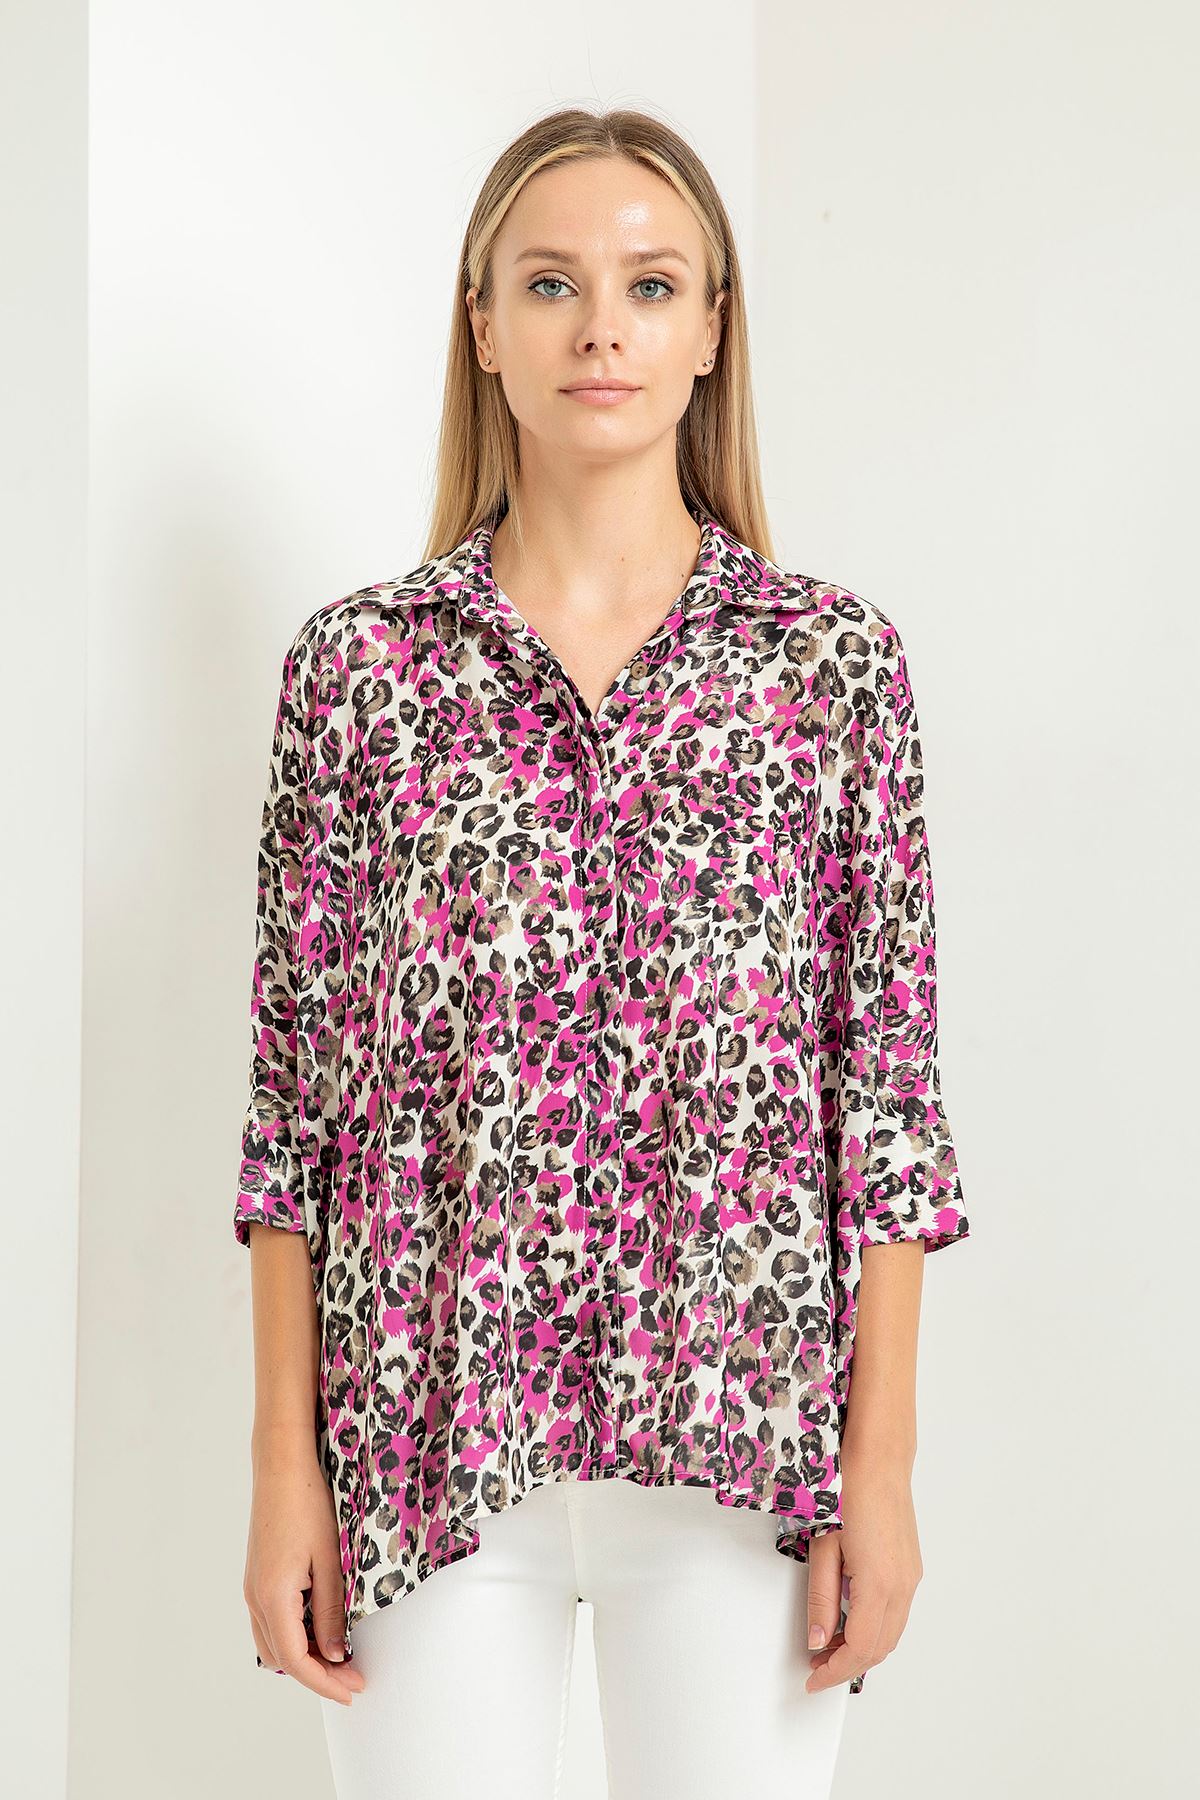 Jesica Fabric Short Hip Height Oversize Leopard Print Women'S Shirt - Fuchıa